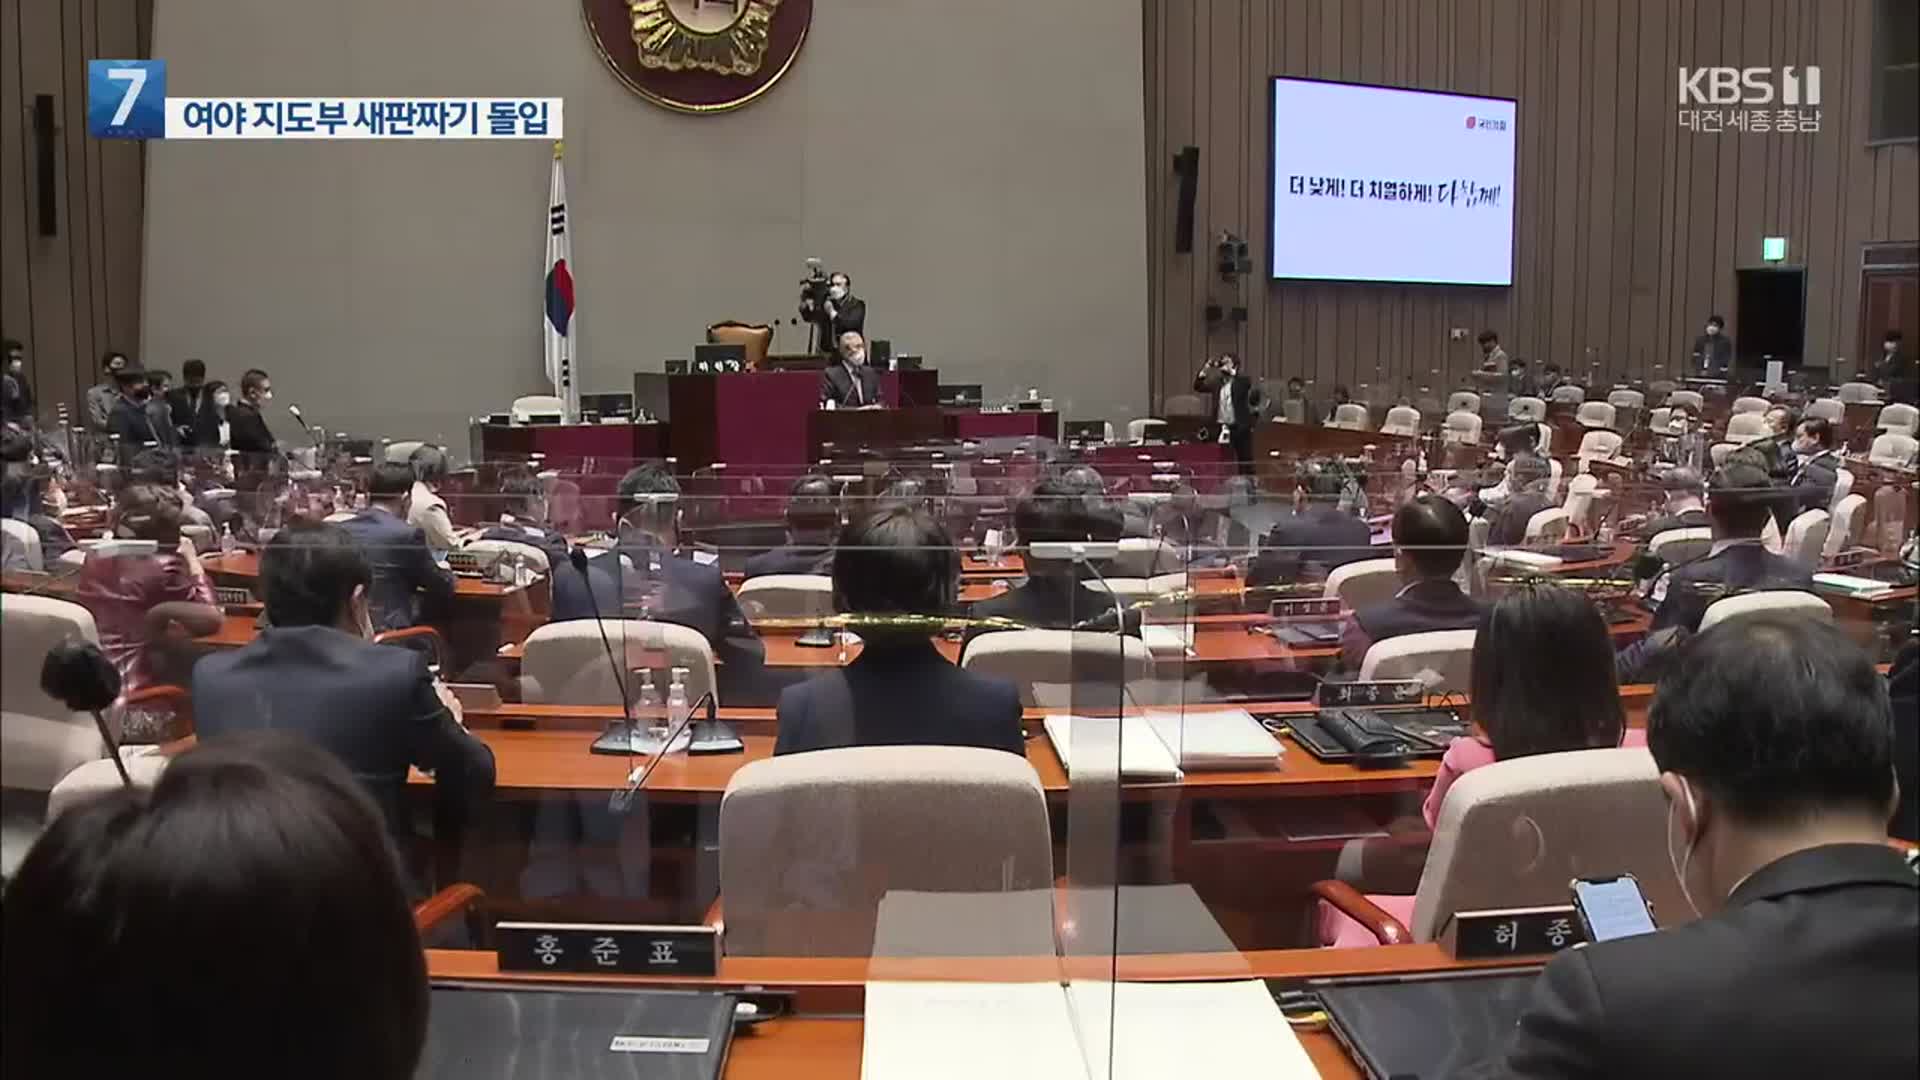 민주당 지도부 총사퇴…김종인 박수받으며 퇴임